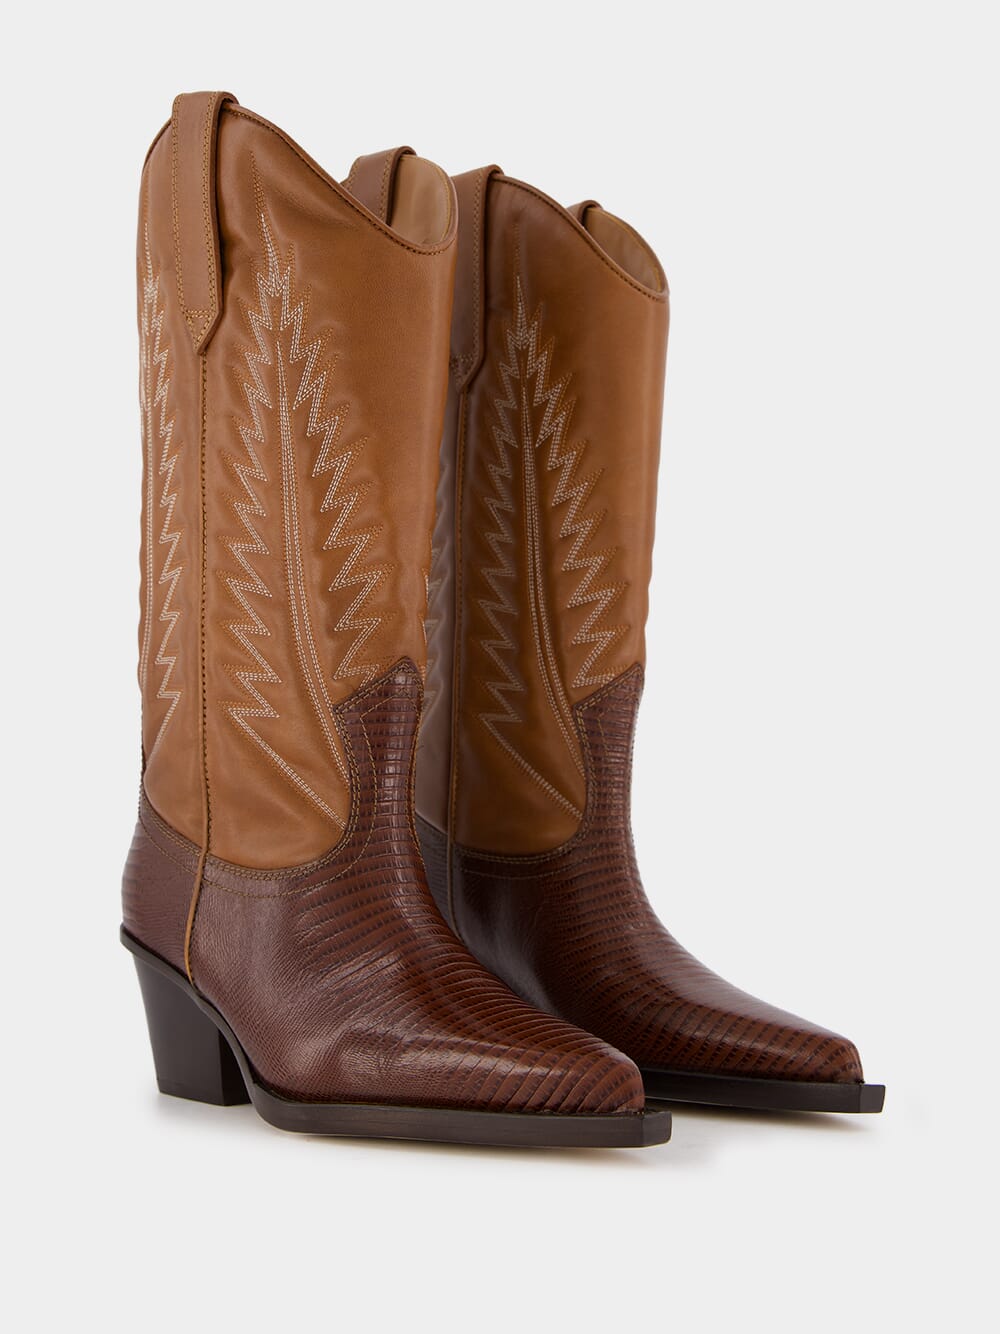 Paris TexasRosario Nappa Leather Cowboy Boots at Fashion Clinic